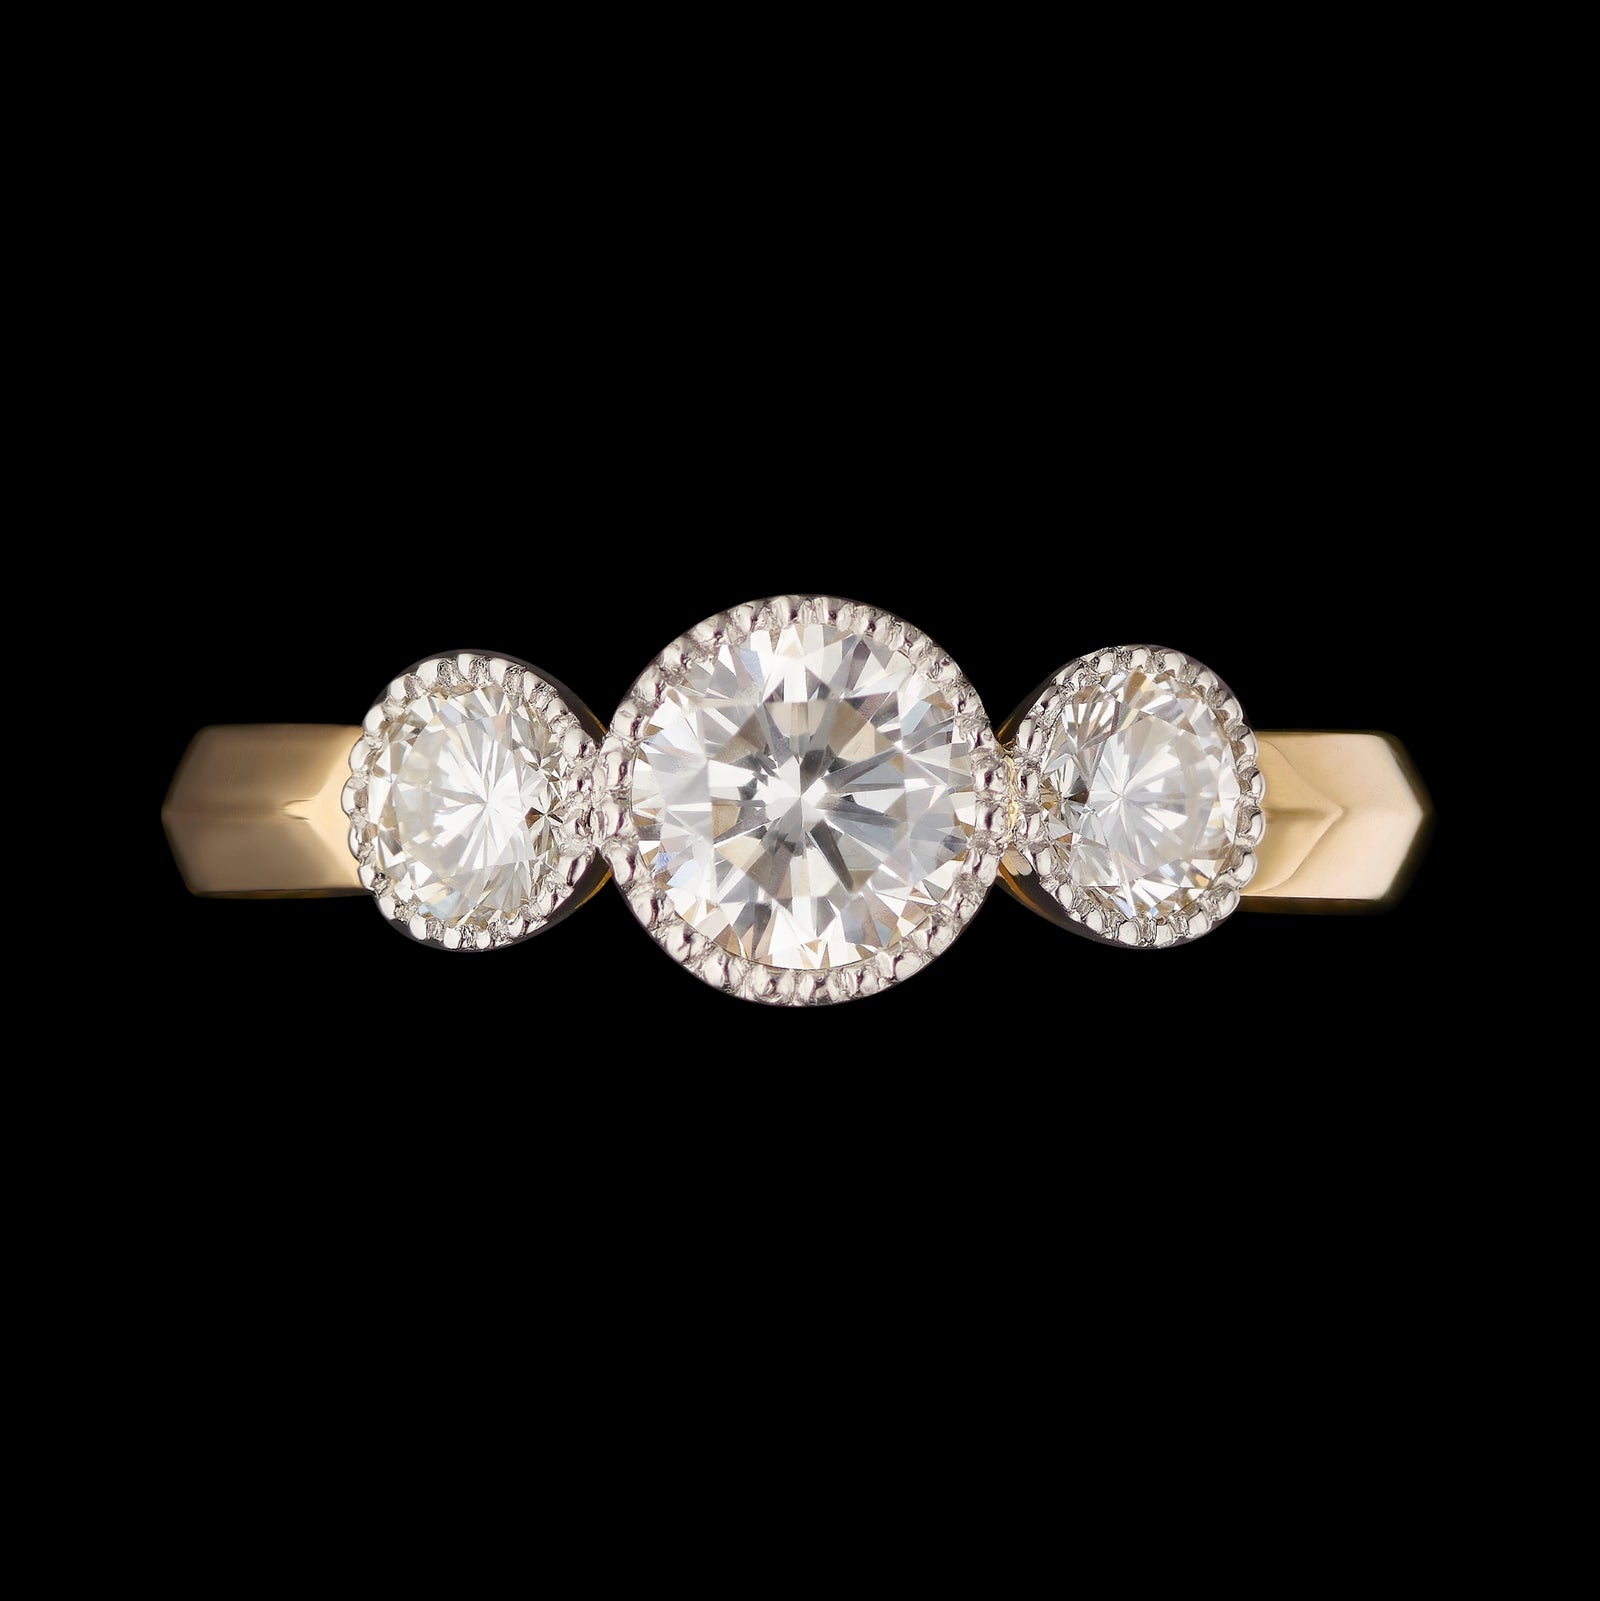 A Unique Classic Diamond Three Stone Ring